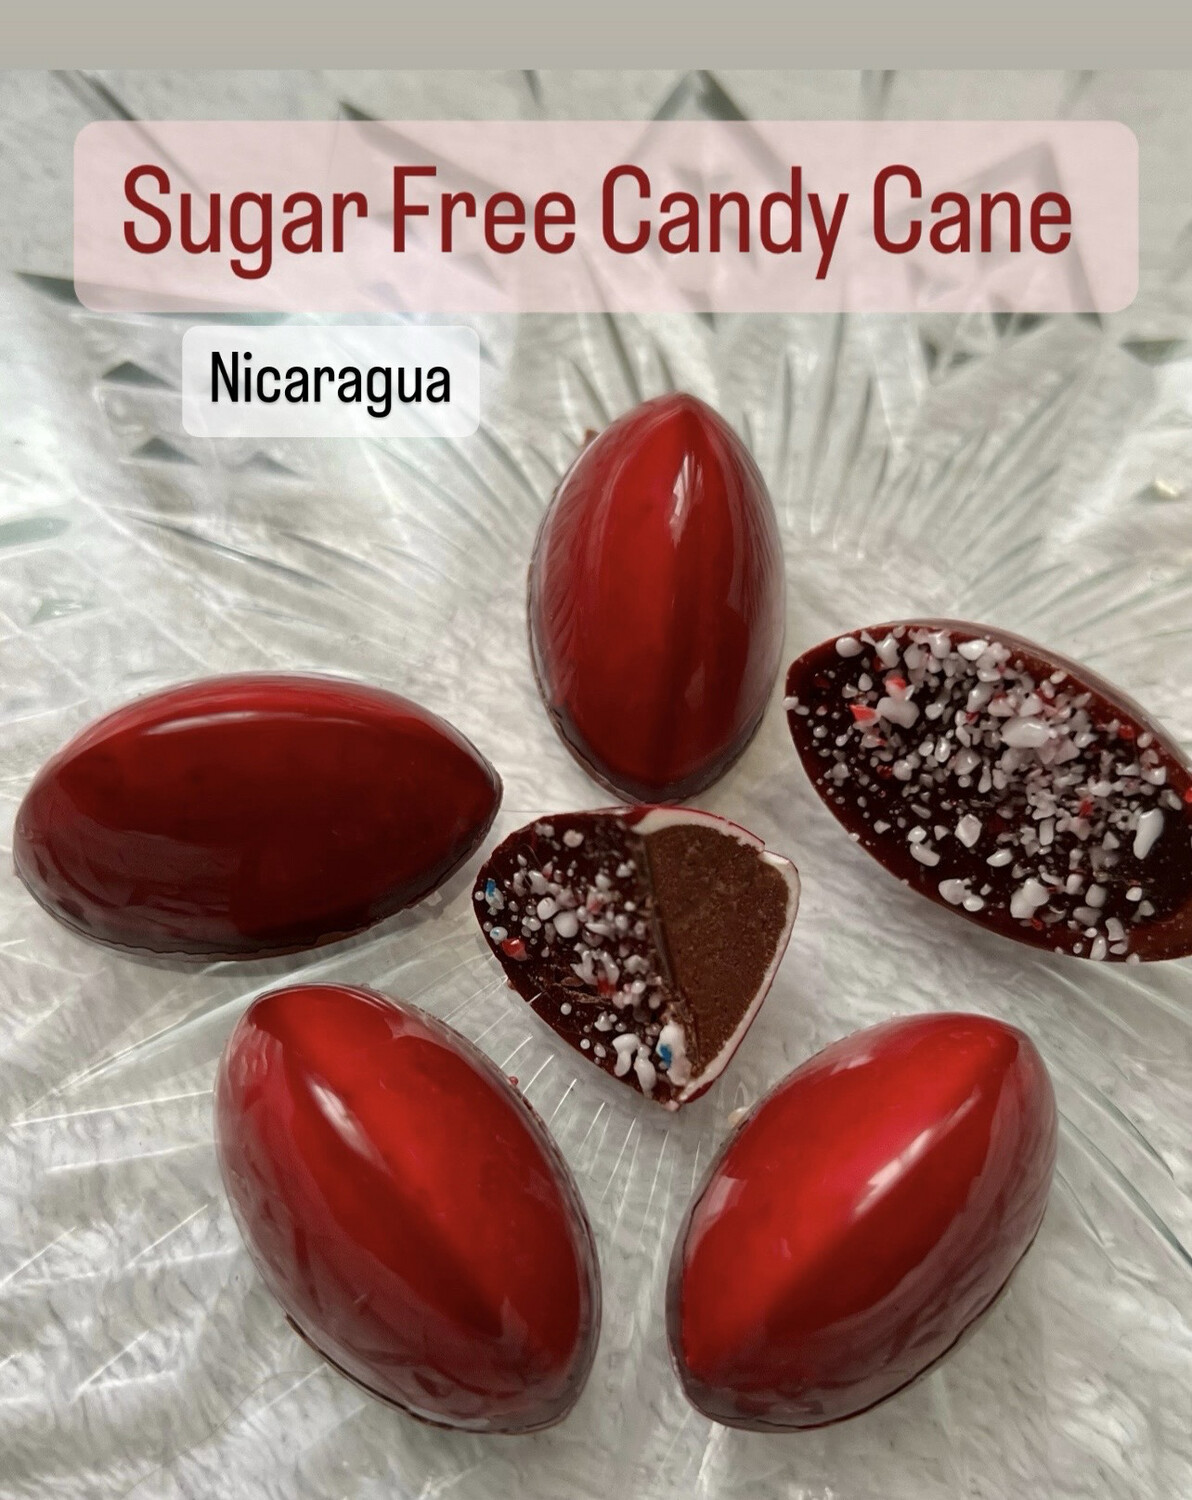 Sugar Free Candy Cane